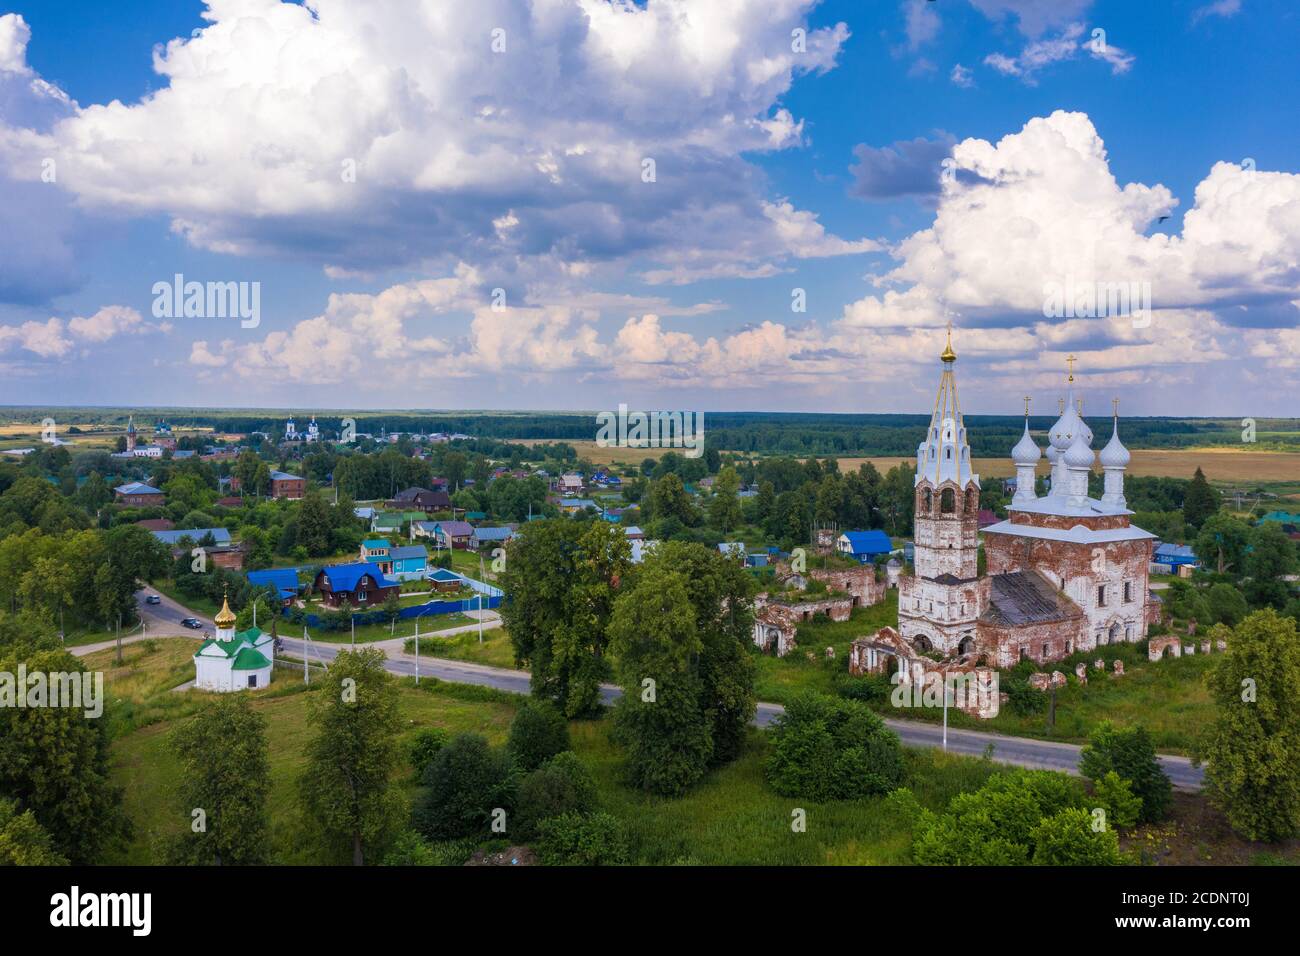 Il villaggio di Dunilovo da una vista dall'alto in una giornata estiva, distretto di Shuisky, regione di Ivanovo, Russia. Foto Stock